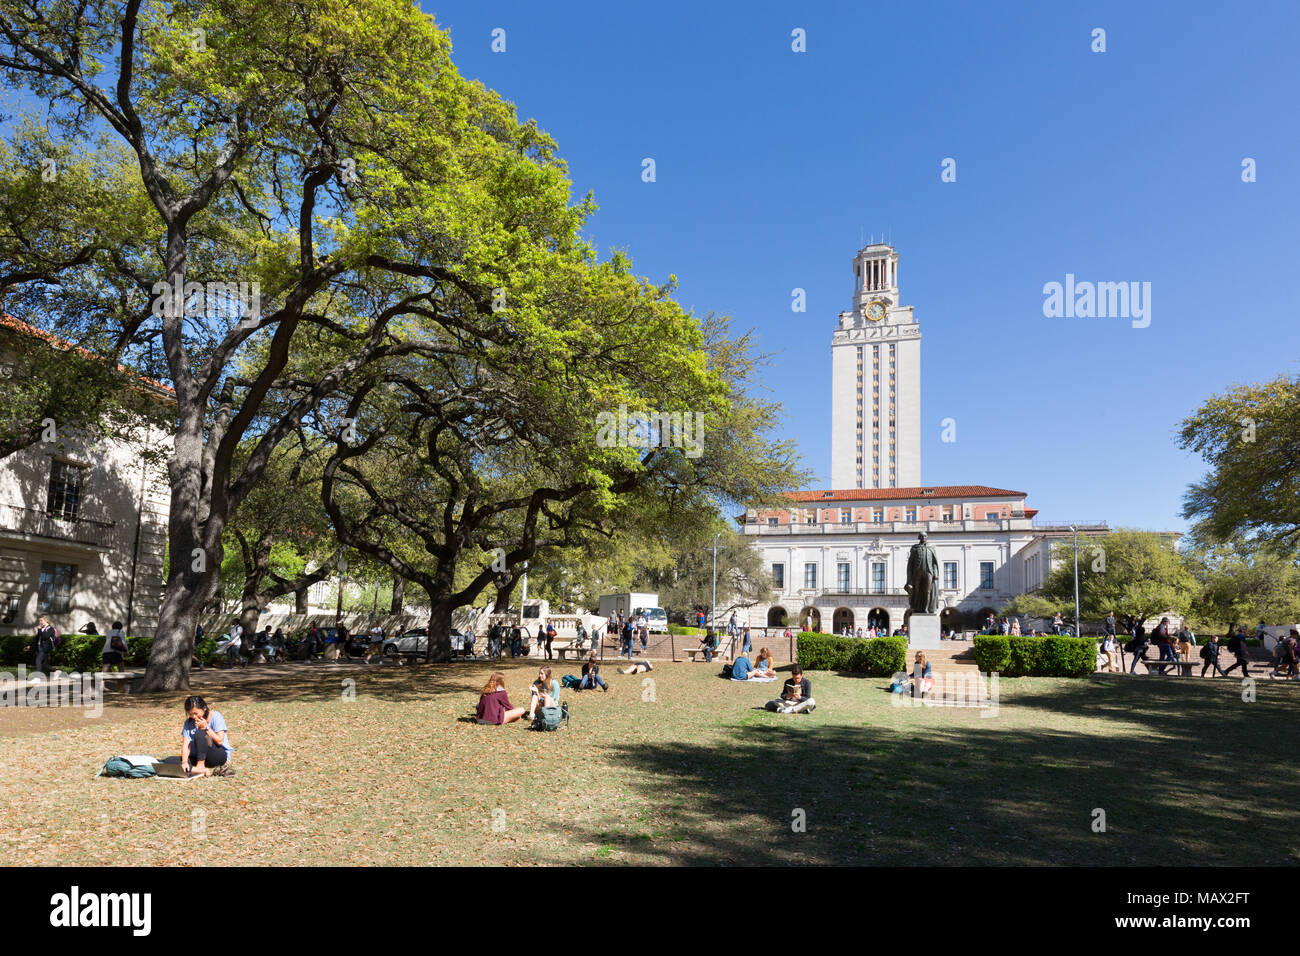 US University; les étudiants lisant sur l'herbe au soleil de printemps, l'université de Texas Austin, Texas USA Banque D'Images